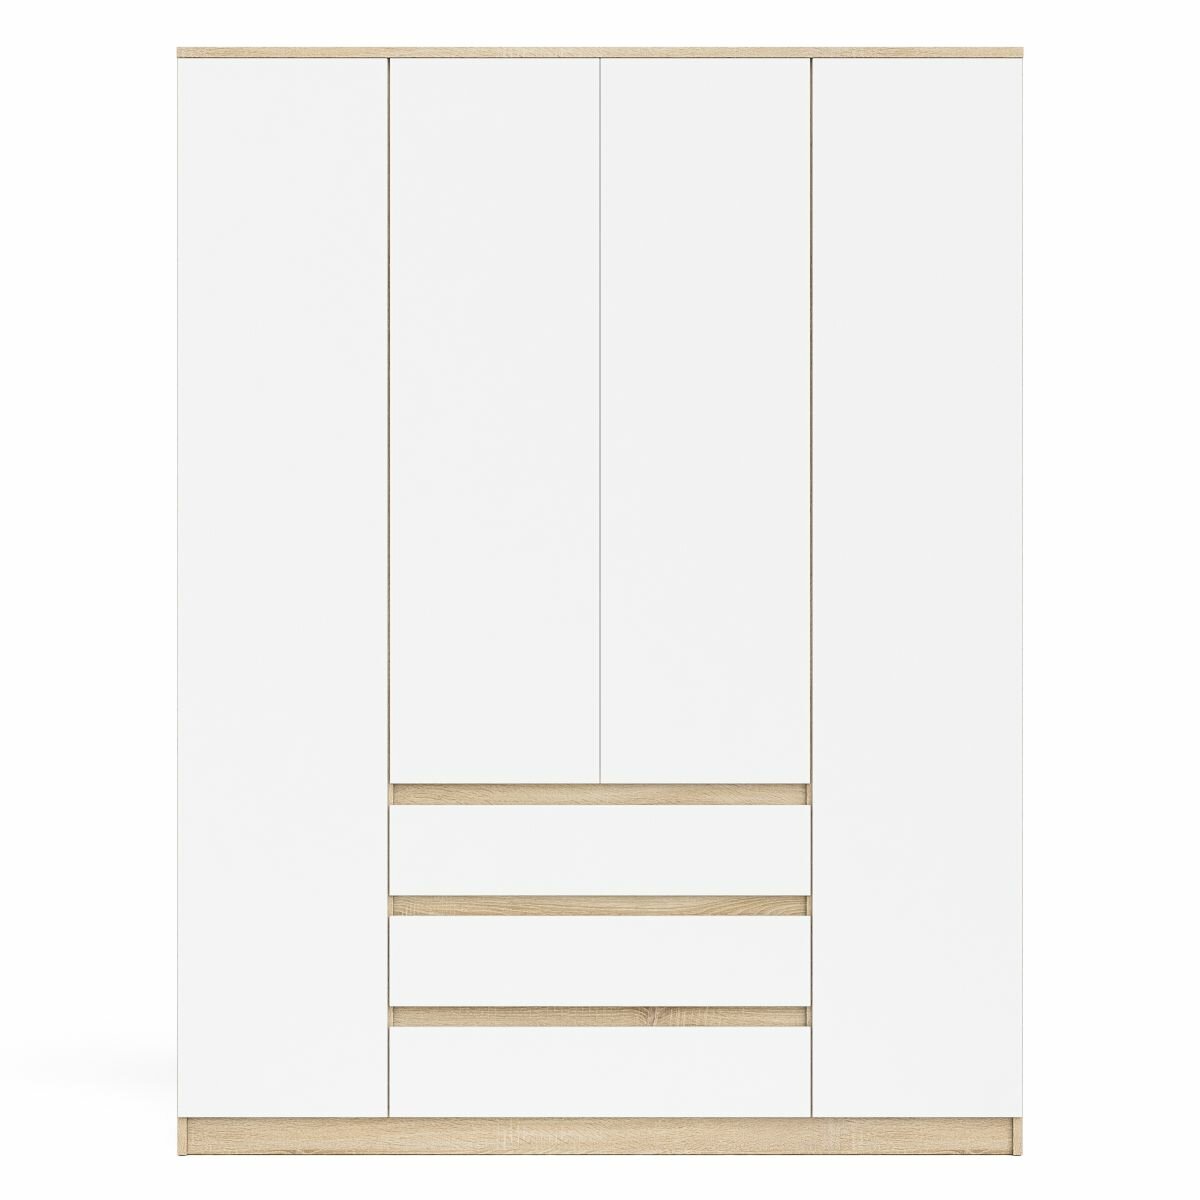 Шкаф-комод с тремя ящиками и четырьмя дверками Мори МШ1600.1 цвет дуб сонома/белый